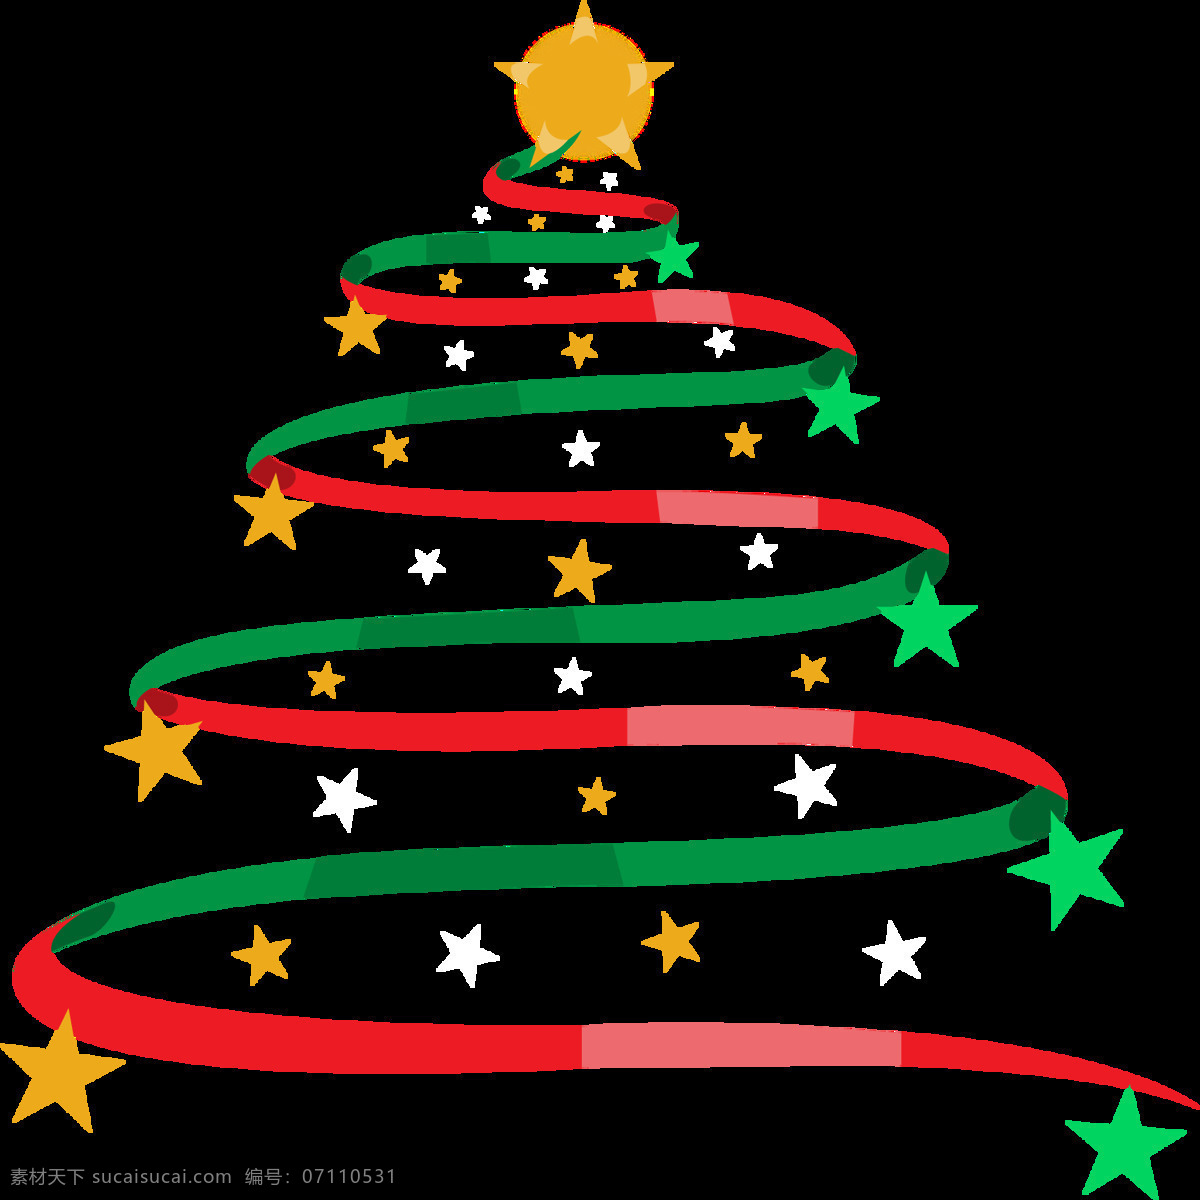 彩色 抽象 星星 飘带 圣诞树 元素 2018圣诞 christmas merry 抽象圣诞树 节日元素 飘带圣诞树 设计元素 圣诞png 圣诞免抠元素 圣诞装扮 星星圣诞树